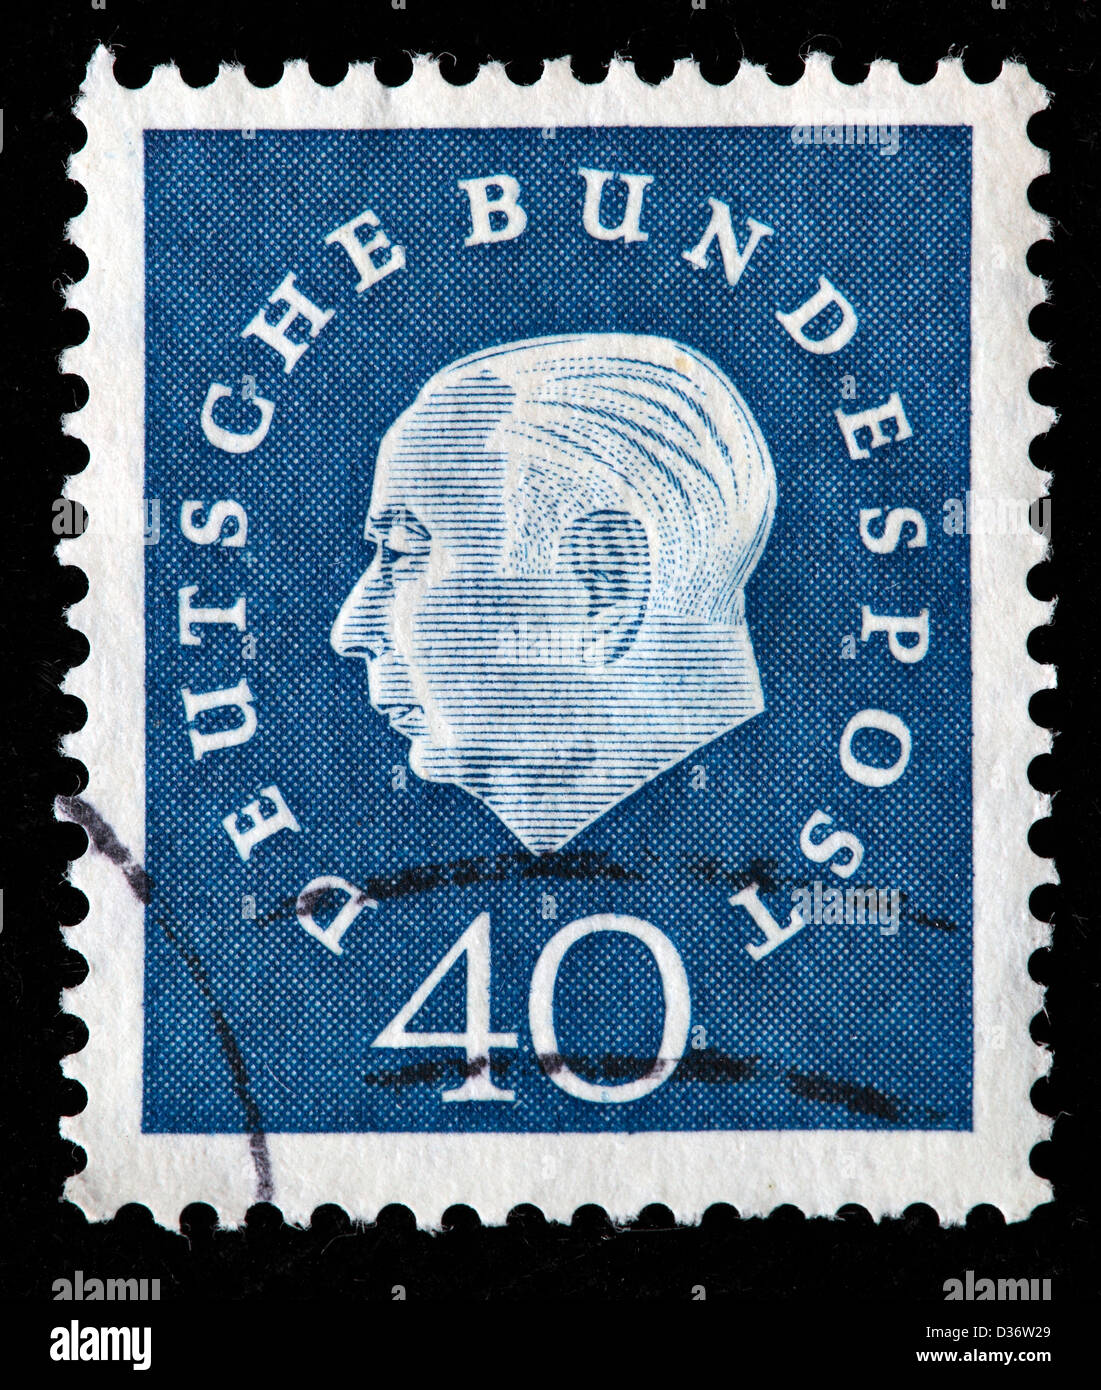 Präsident Theodor Heuss, Briefmarke, Deutschland, 1958 Stockfoto